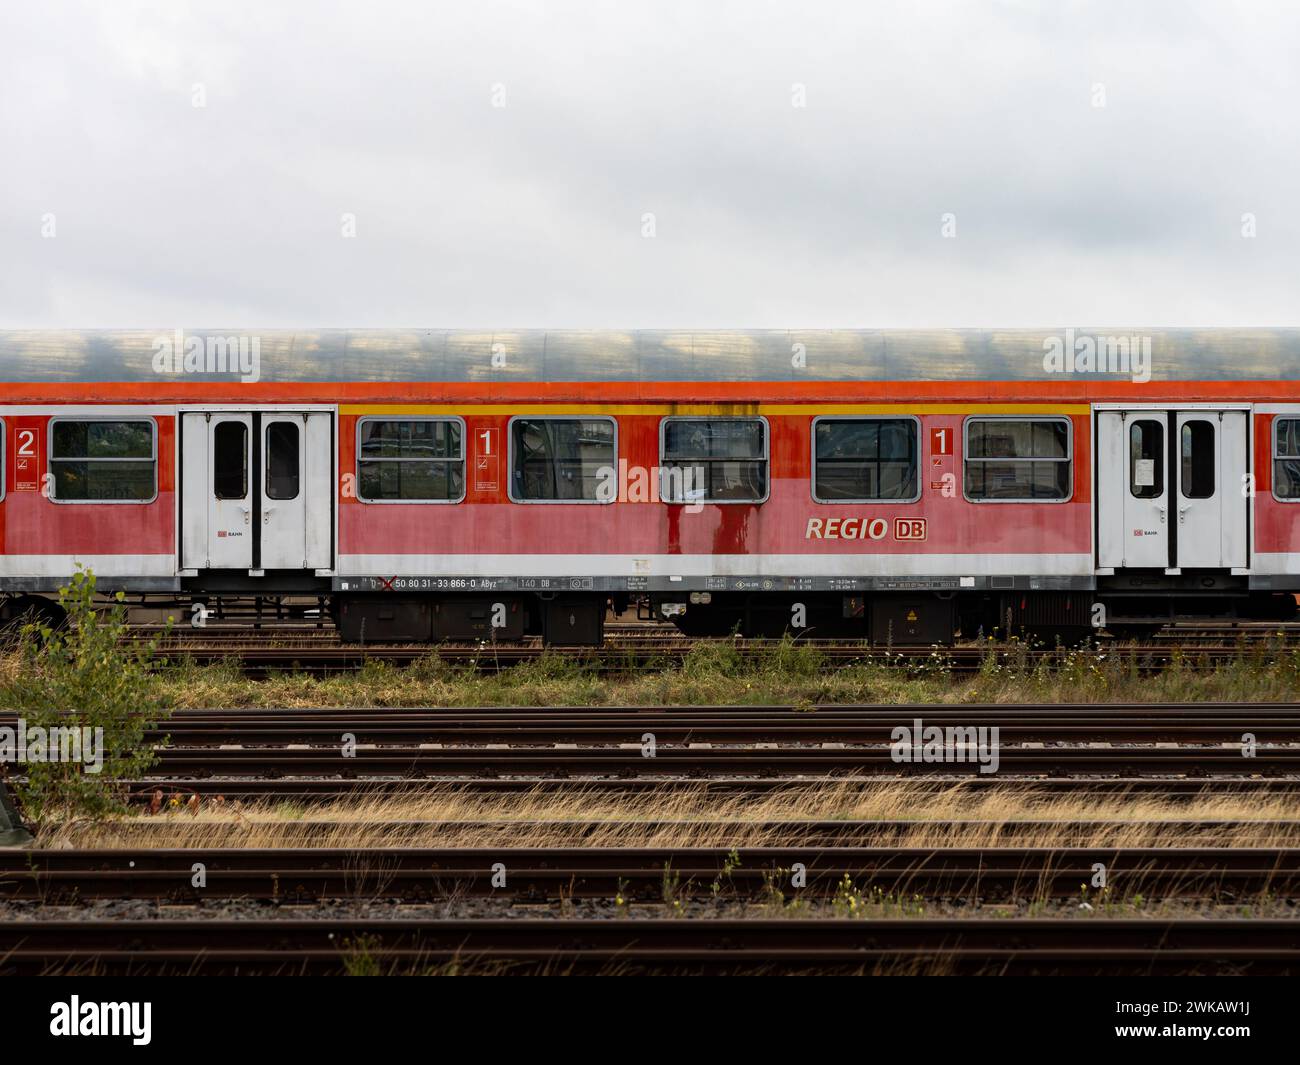 Il vecchio vagone ferroviario pendolare della società DB Regio è fuori servizio. Veicolo intempestivo e abbandonato per i passeggeri in piedi su un binario ferroviario vuoto Foto Stock